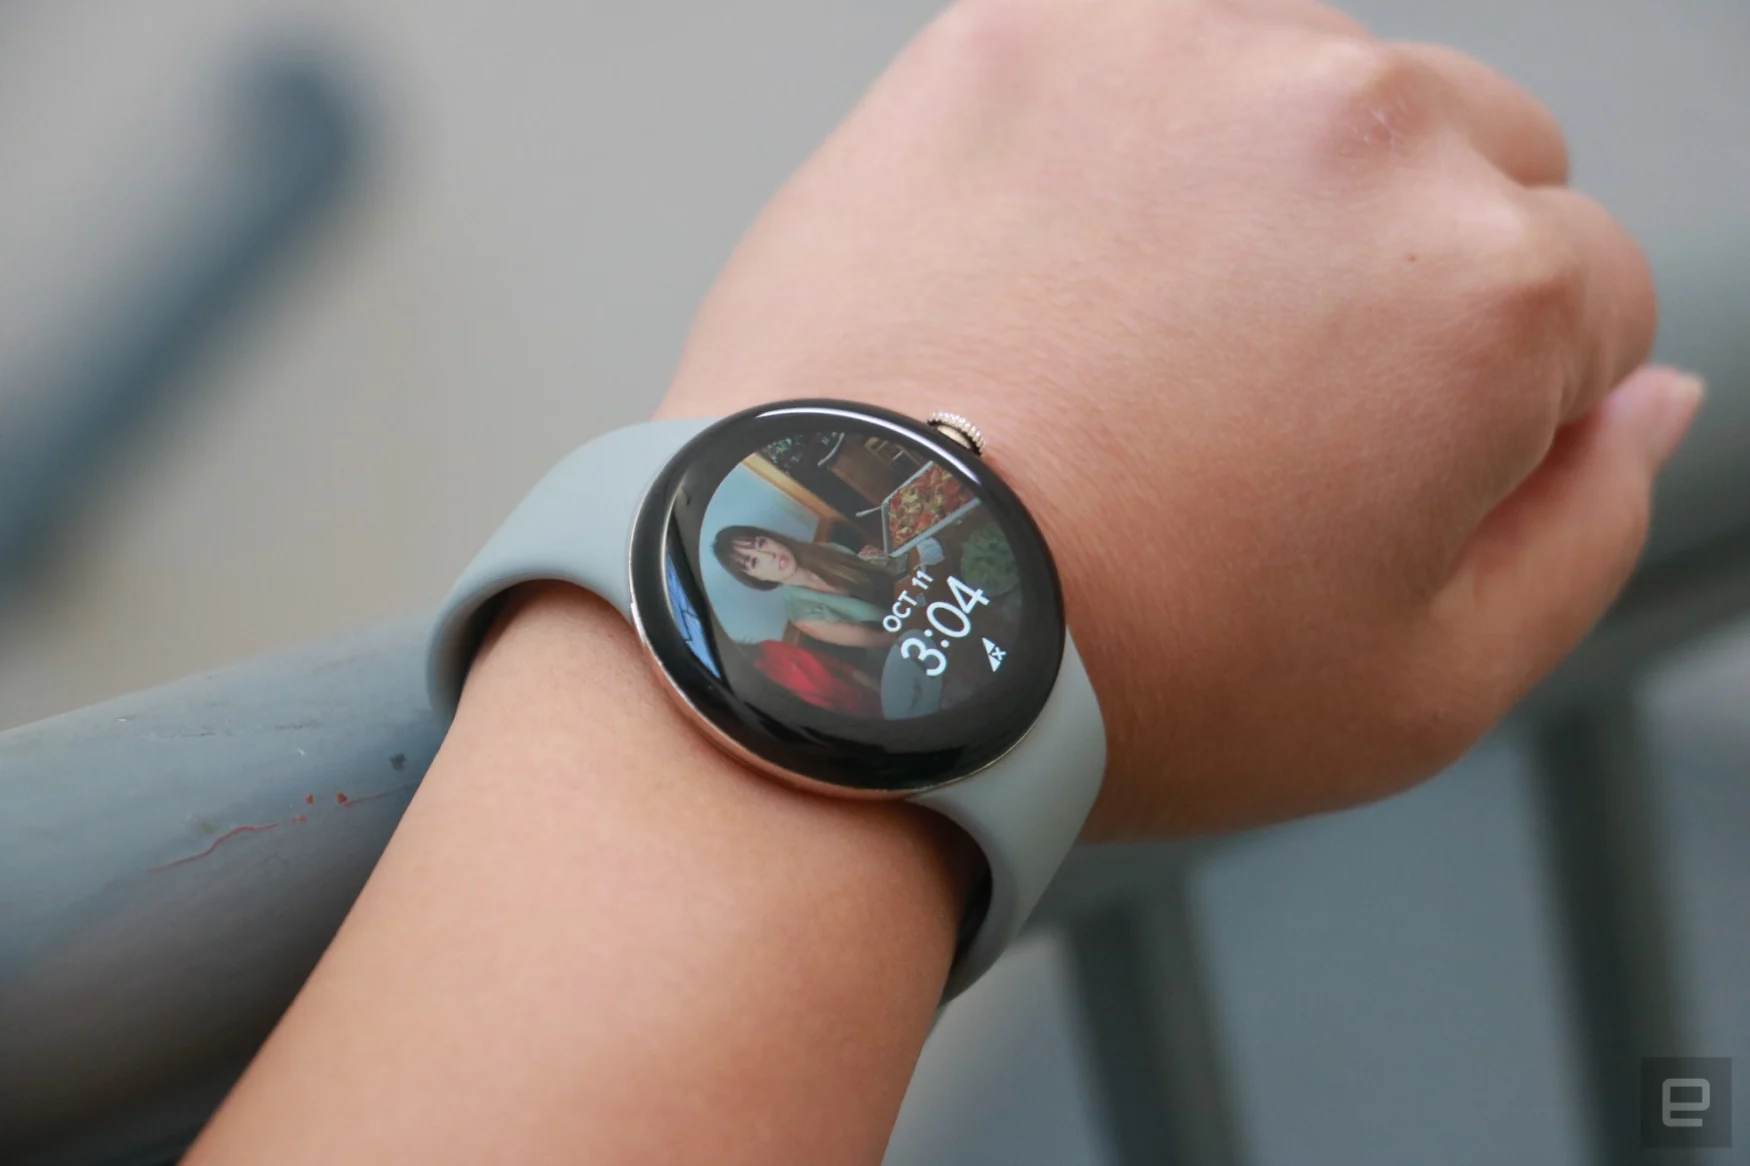 Pixel Watch là sản phẩm đồng hồ thông minh mới nhất của Google. Nó được thiết kế đẹp mắt và tích hợp nhiều tính năng tiện ích. Với nó, bạn có thể kiểm tra thông tin thời tiết, giám sát sức khỏe, tìm kiếm hướng dẫn đường đi và thậm chí là trả lời cuộc gọi mà không cần nhìn vào điện thoại của mình. Sản phẩm này chắc chắn sẽ làm bạn hài lòng.